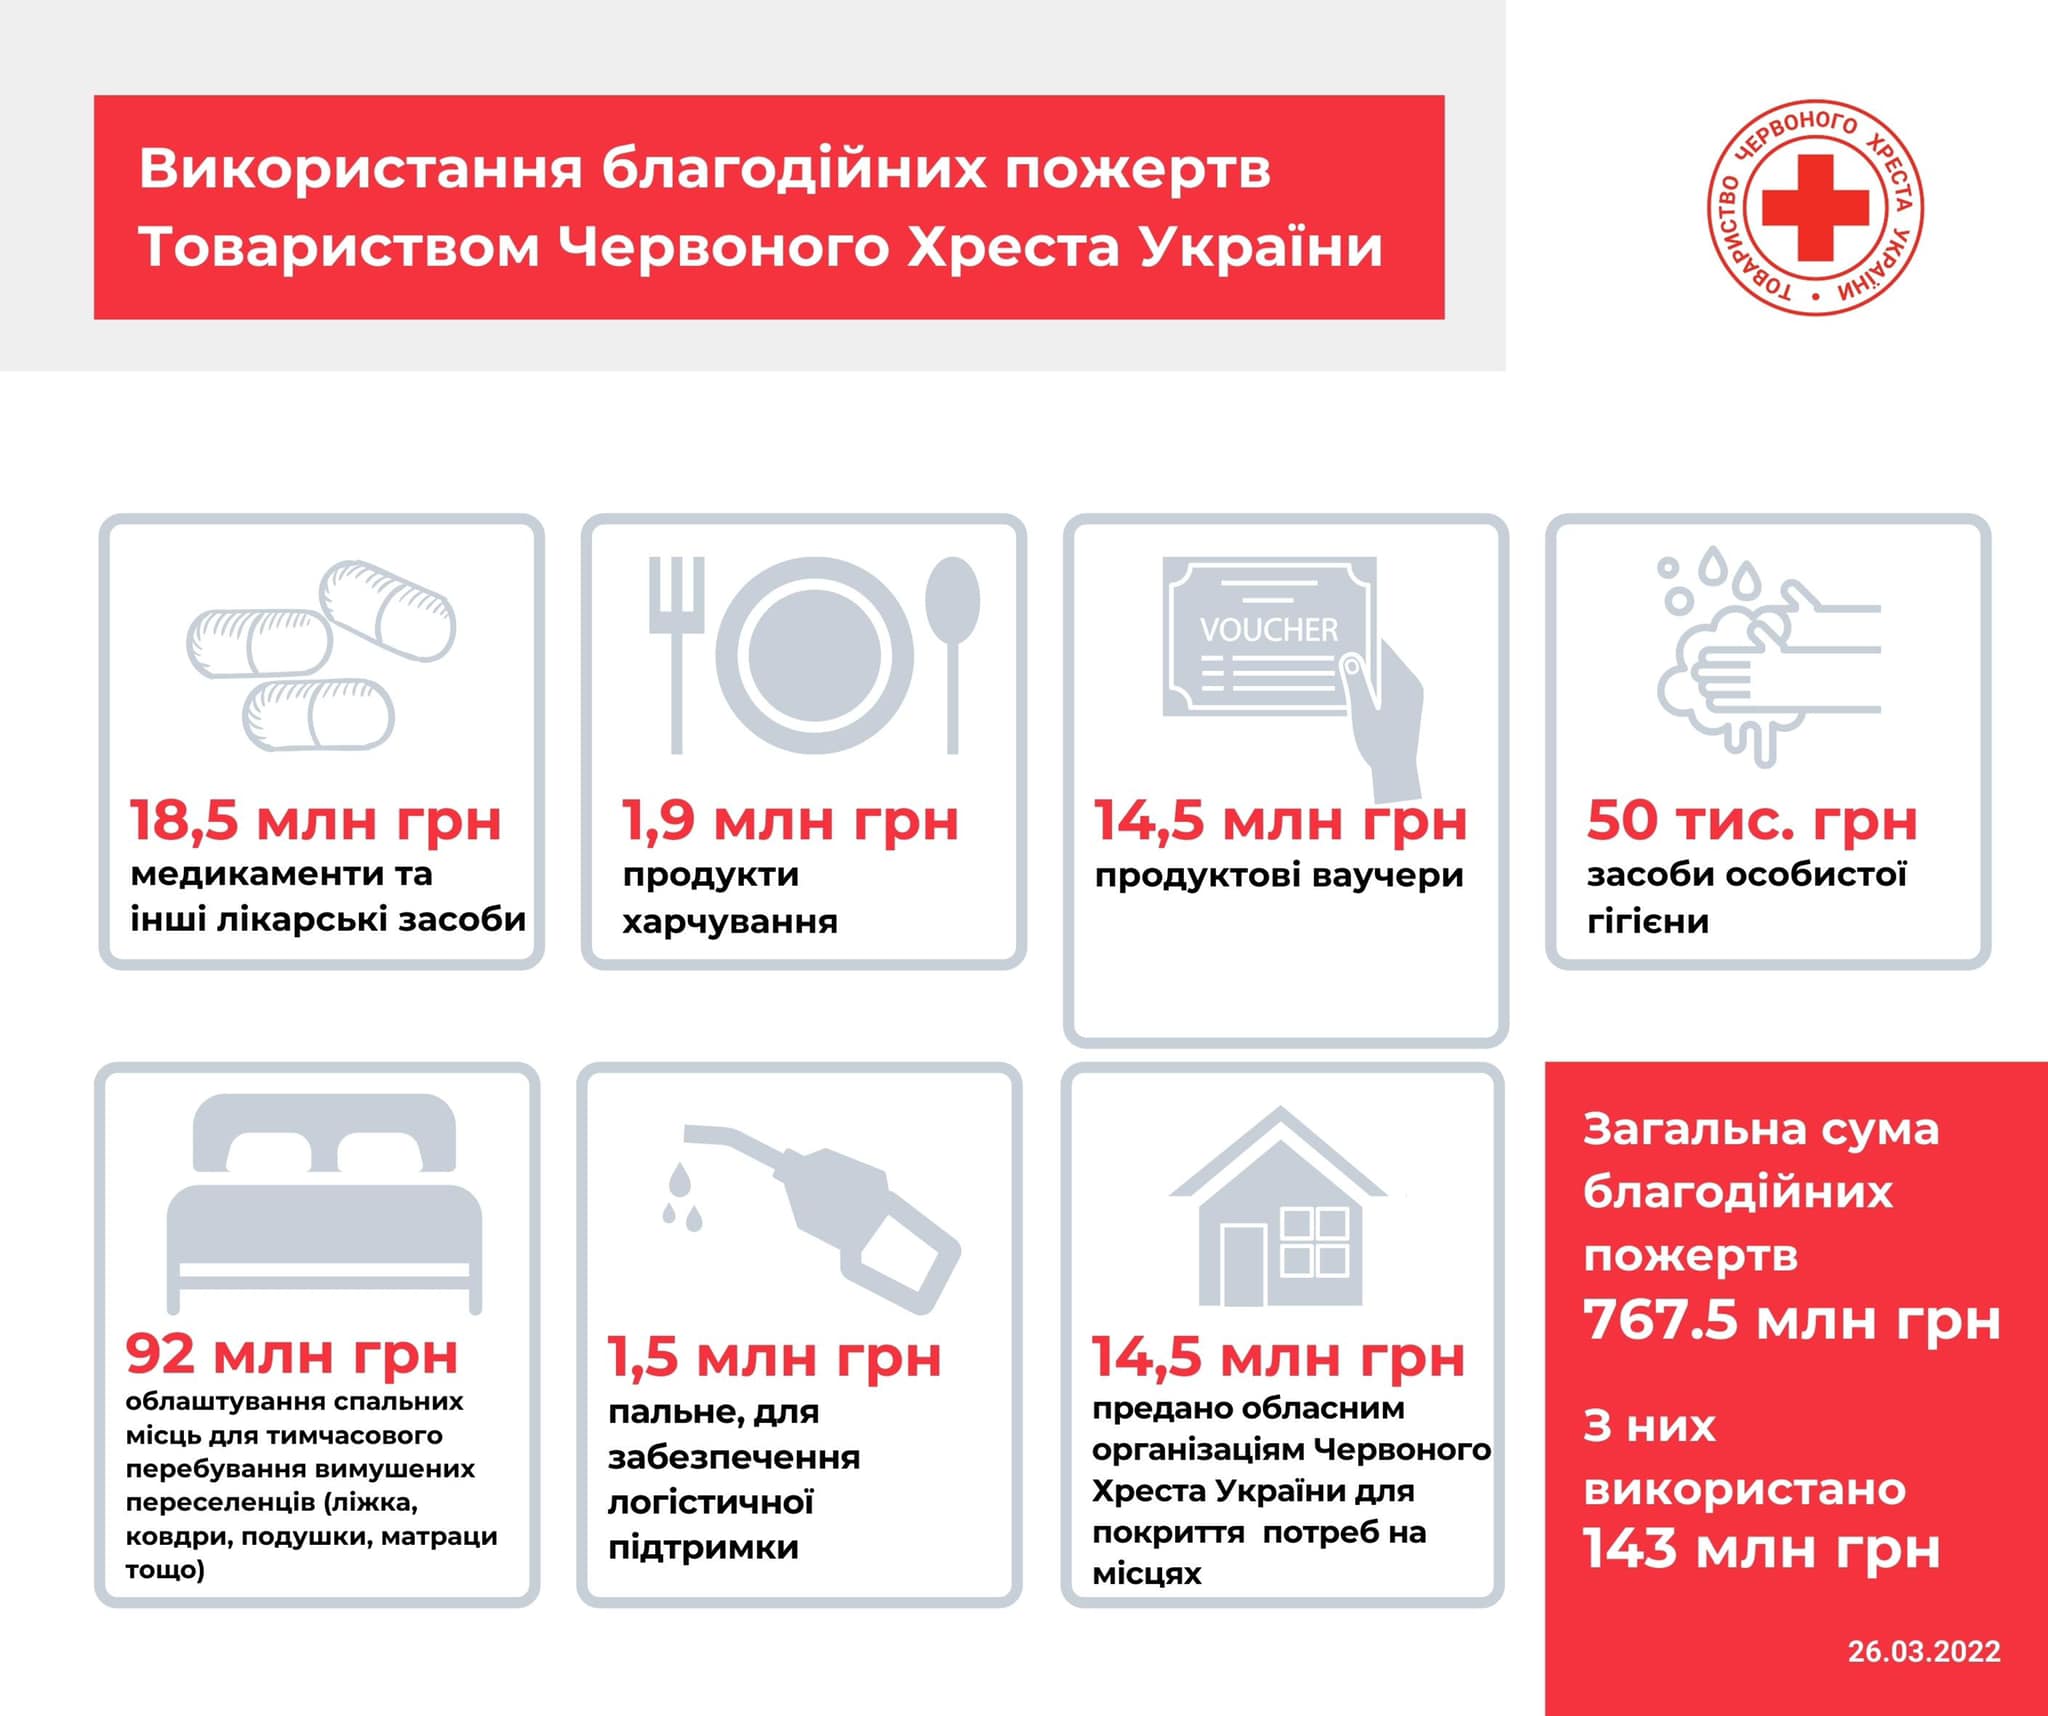 Пояснюємо скандал з Червоним Хрестом: про офіс в Ростові, зібрані кошти, роботу в Україні